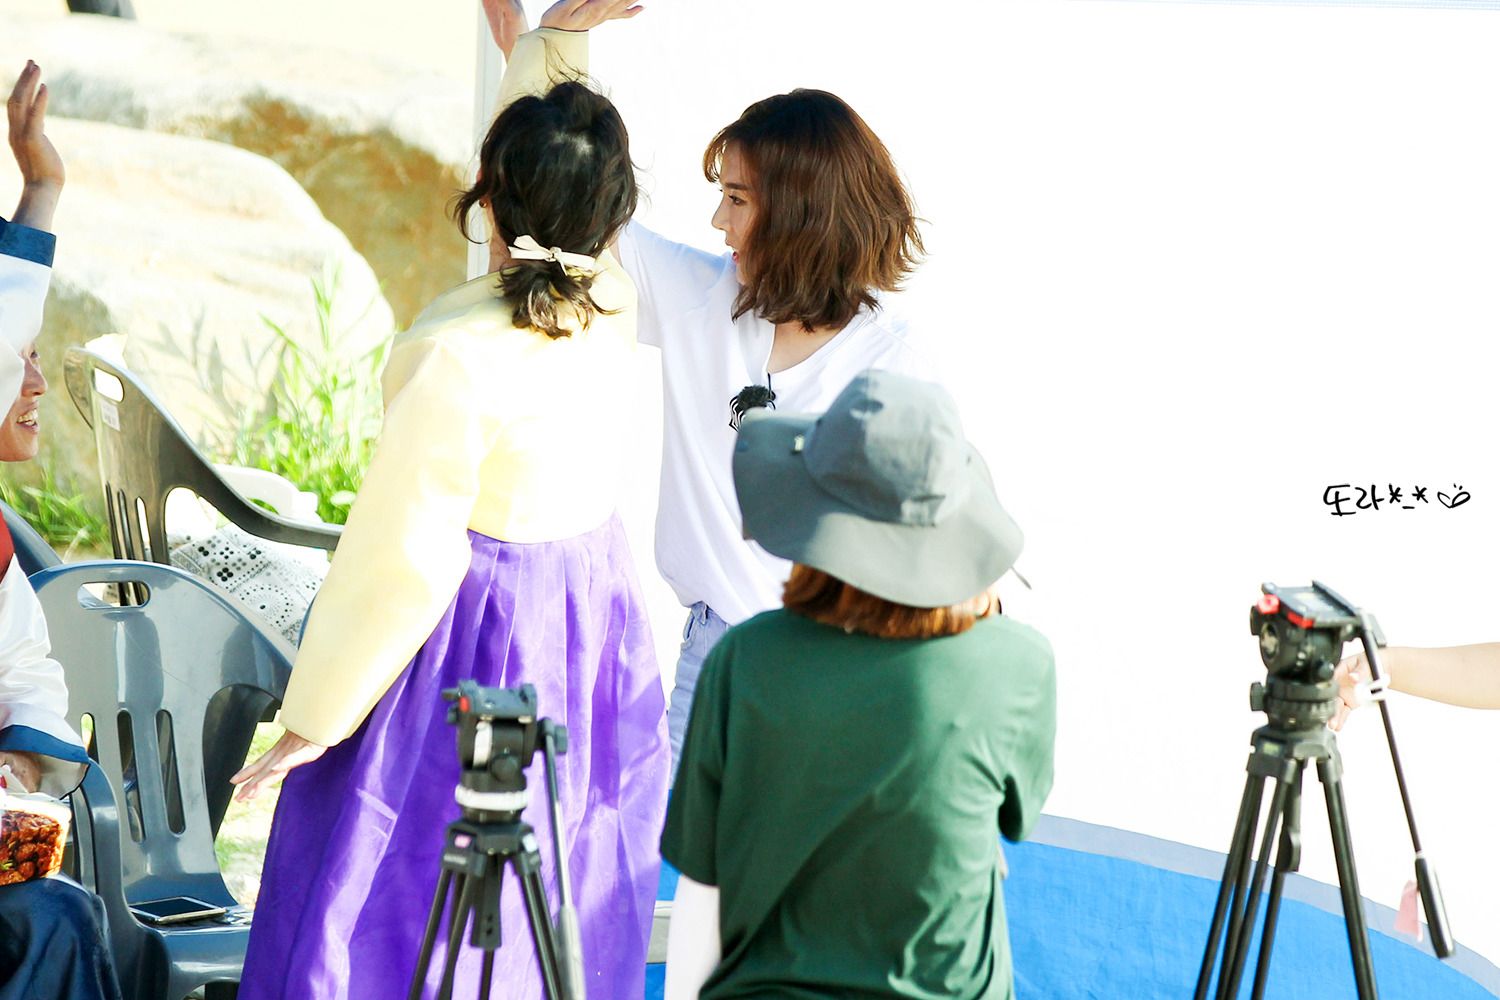 [PIC][16-05-2016]Sunny ghi hình cho chương trình "재래시장 살리자" của kênh JTBC tại Busan vào hôm nay - Page 12 246B84425950EEAD14B89F